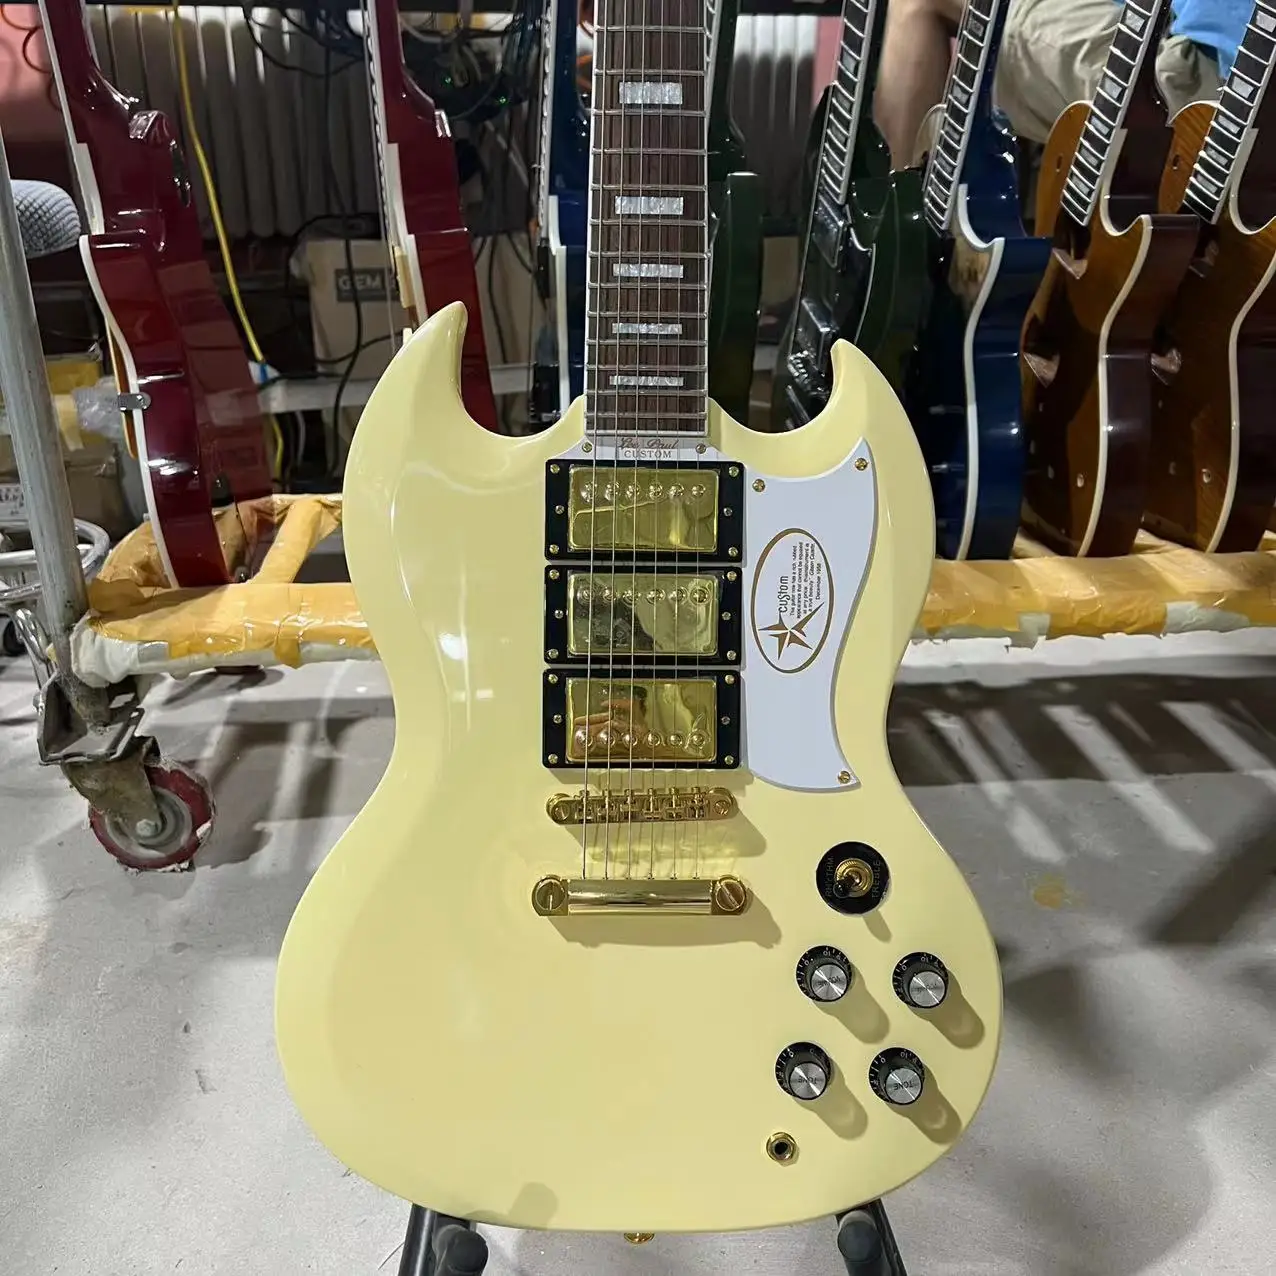 

Электрогитара SG G400 кремового желтого цвета золотого цвета, три пикапа, корпус гитары из красного дерева, бесплатная доставка